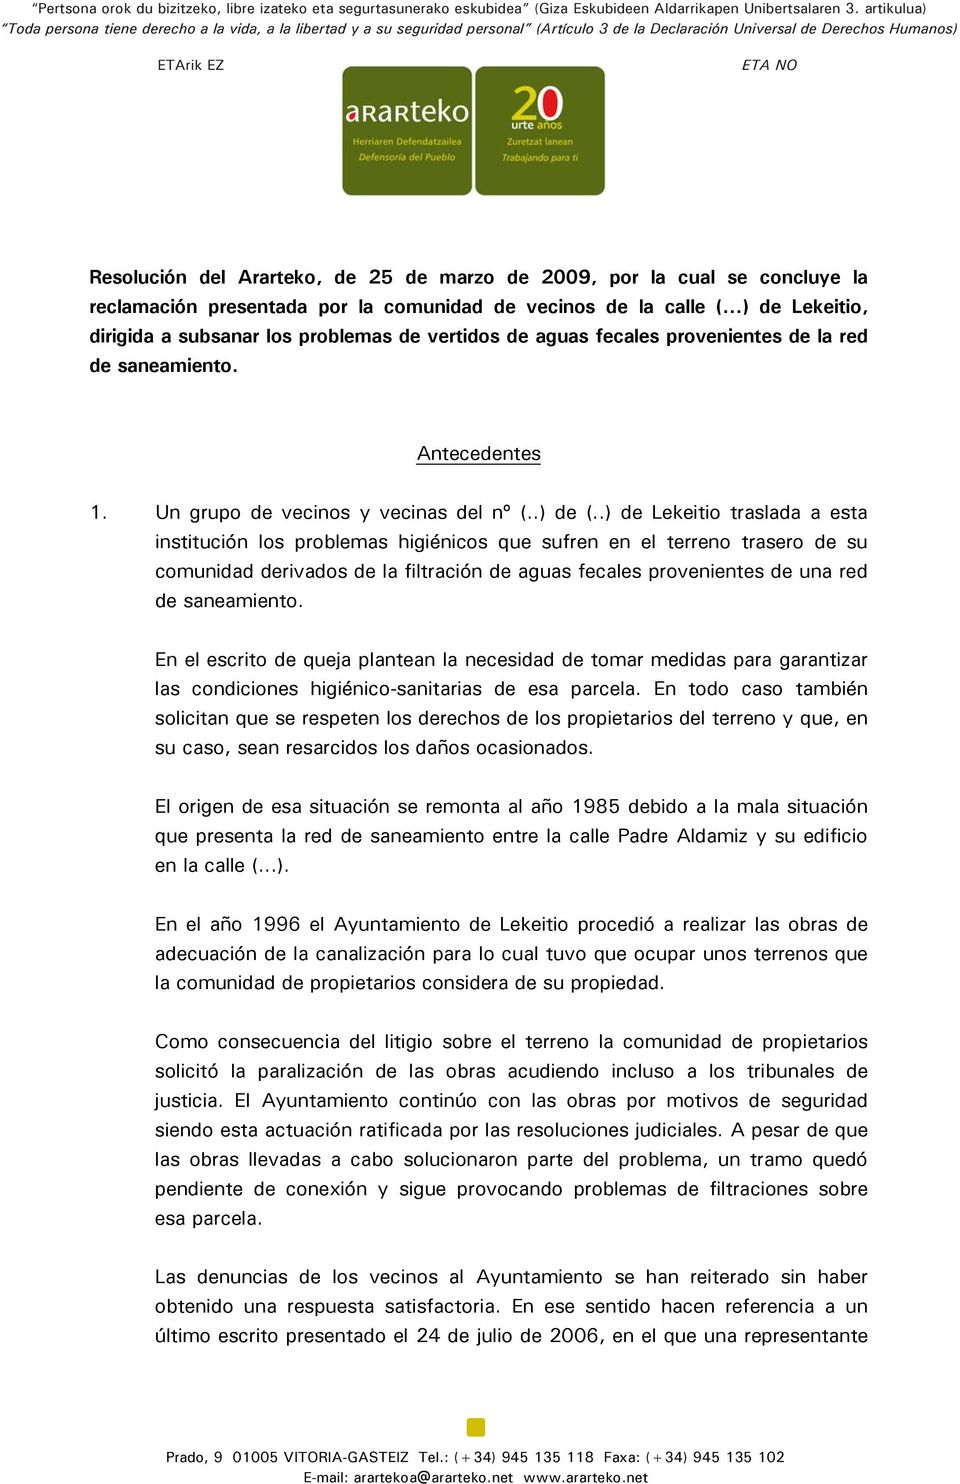 de marzo de 2009, por la cual se concluye la reclamación presentada por la comunidad de vecinos de la calle ( ) de Lekeitio, dirigida a subsanar los problemas de vertidos de aguas fecales